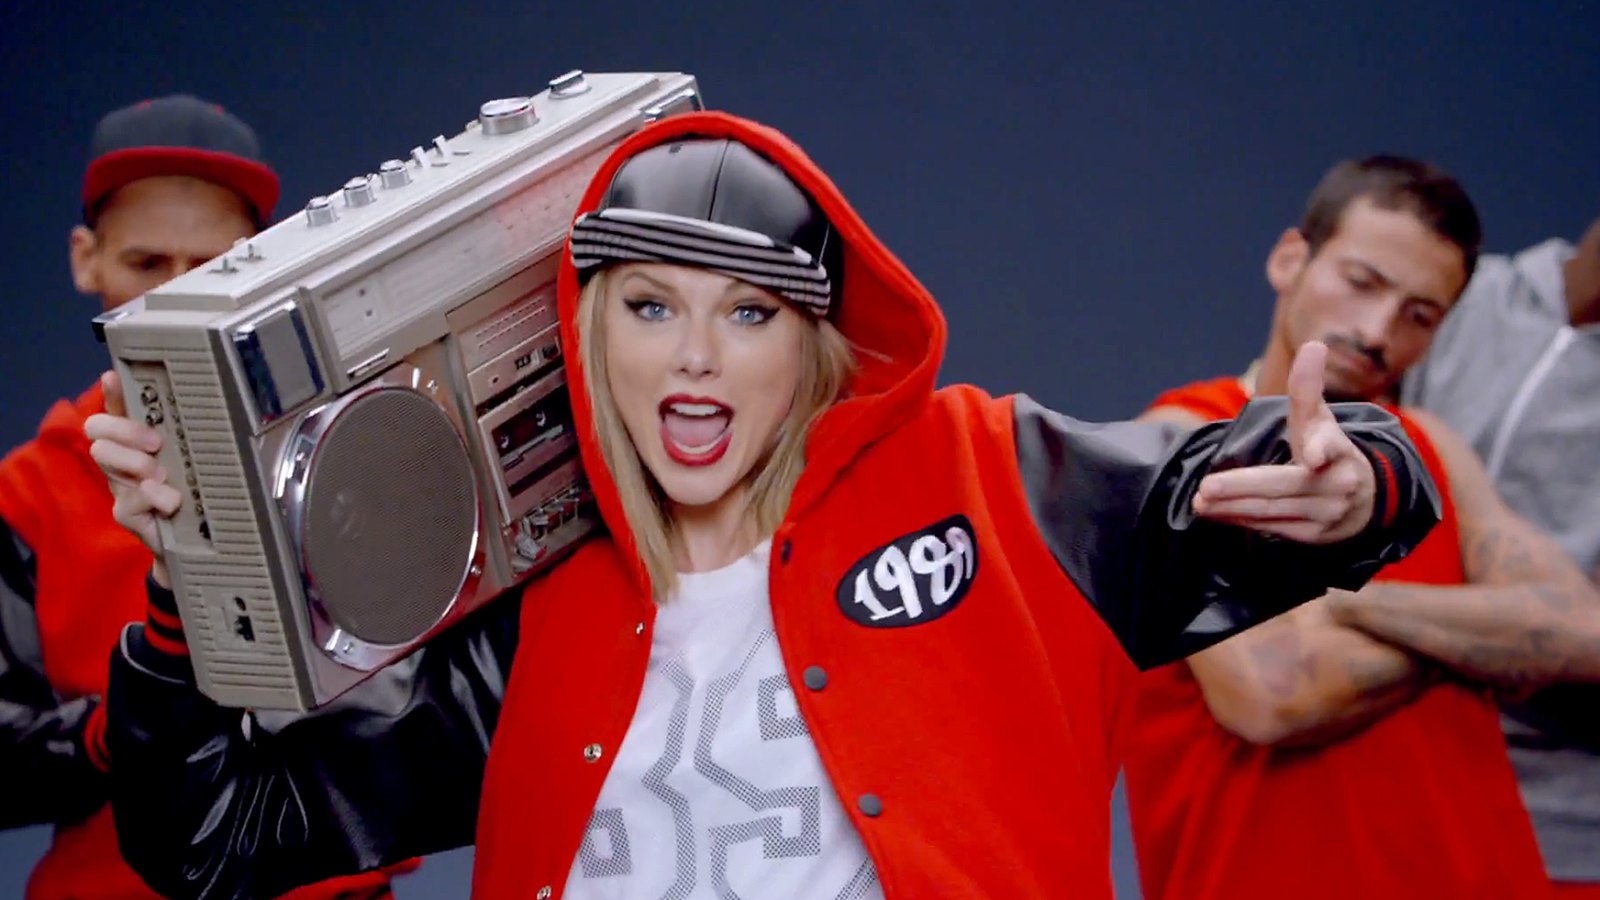 Видео поп музыку. Taylor Swift Shake it off. Музыкальные видеоклипы. Музыкальная фотосессия. Клипы фото.